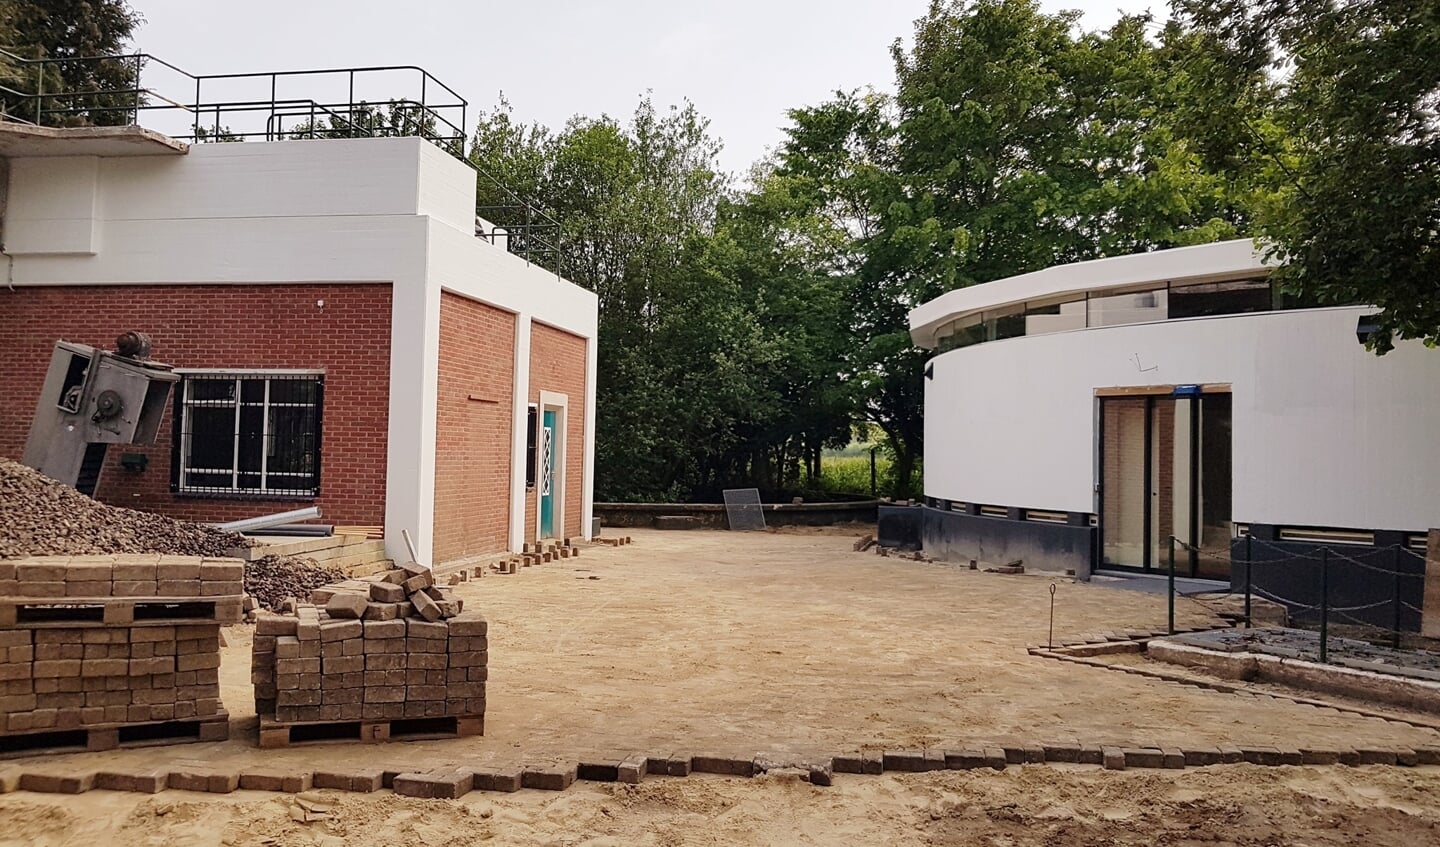 Het nieuwe bezoekerscentrum van natuurpark Kronenkamp. Foto: JdW Studios